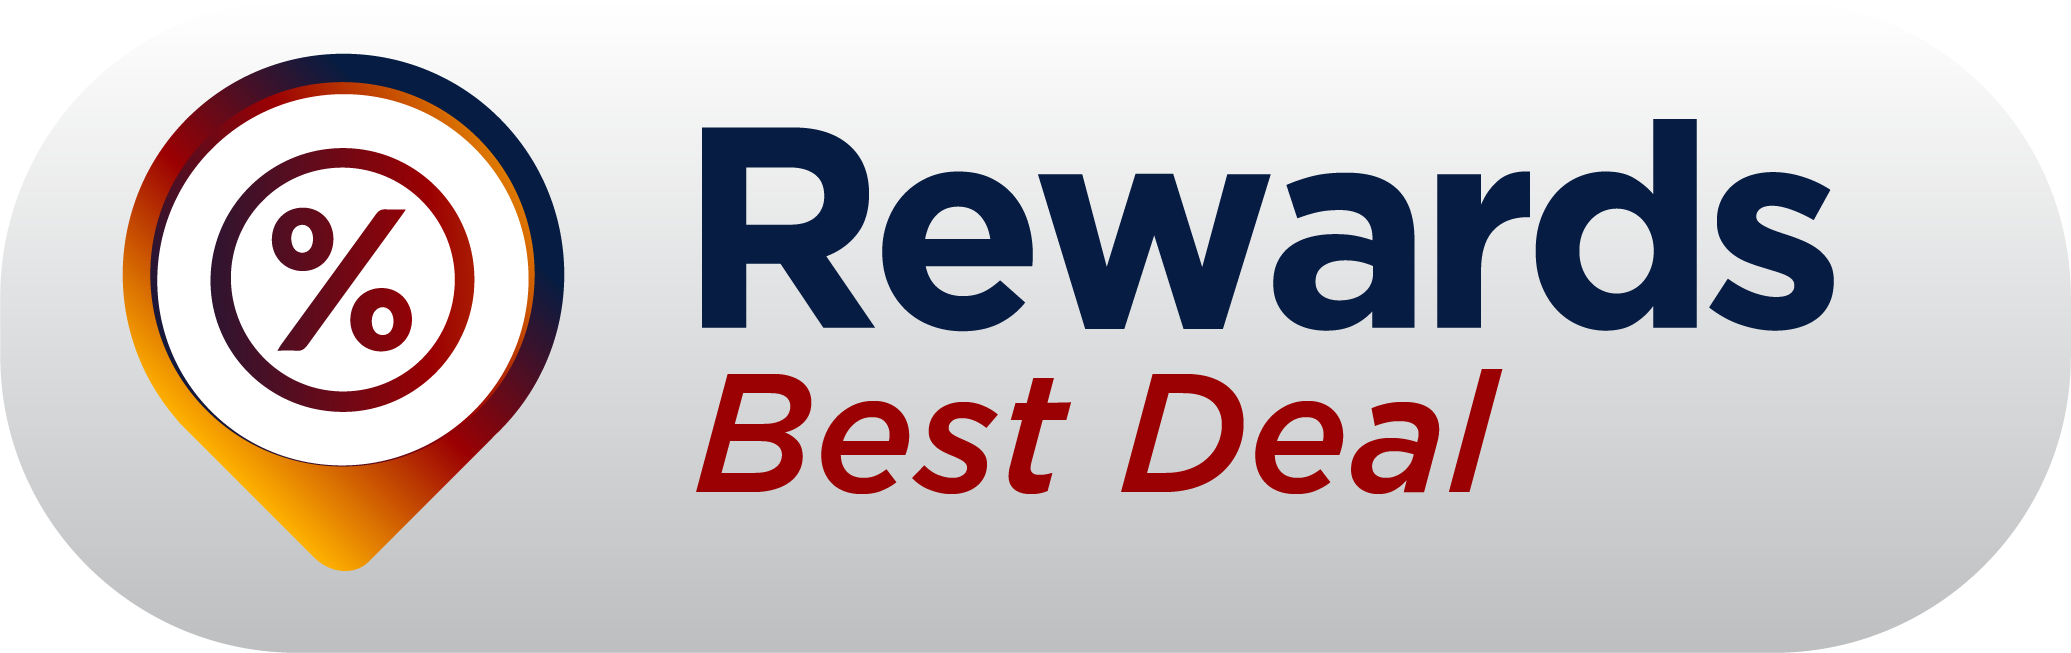 REWARDS Best Deal